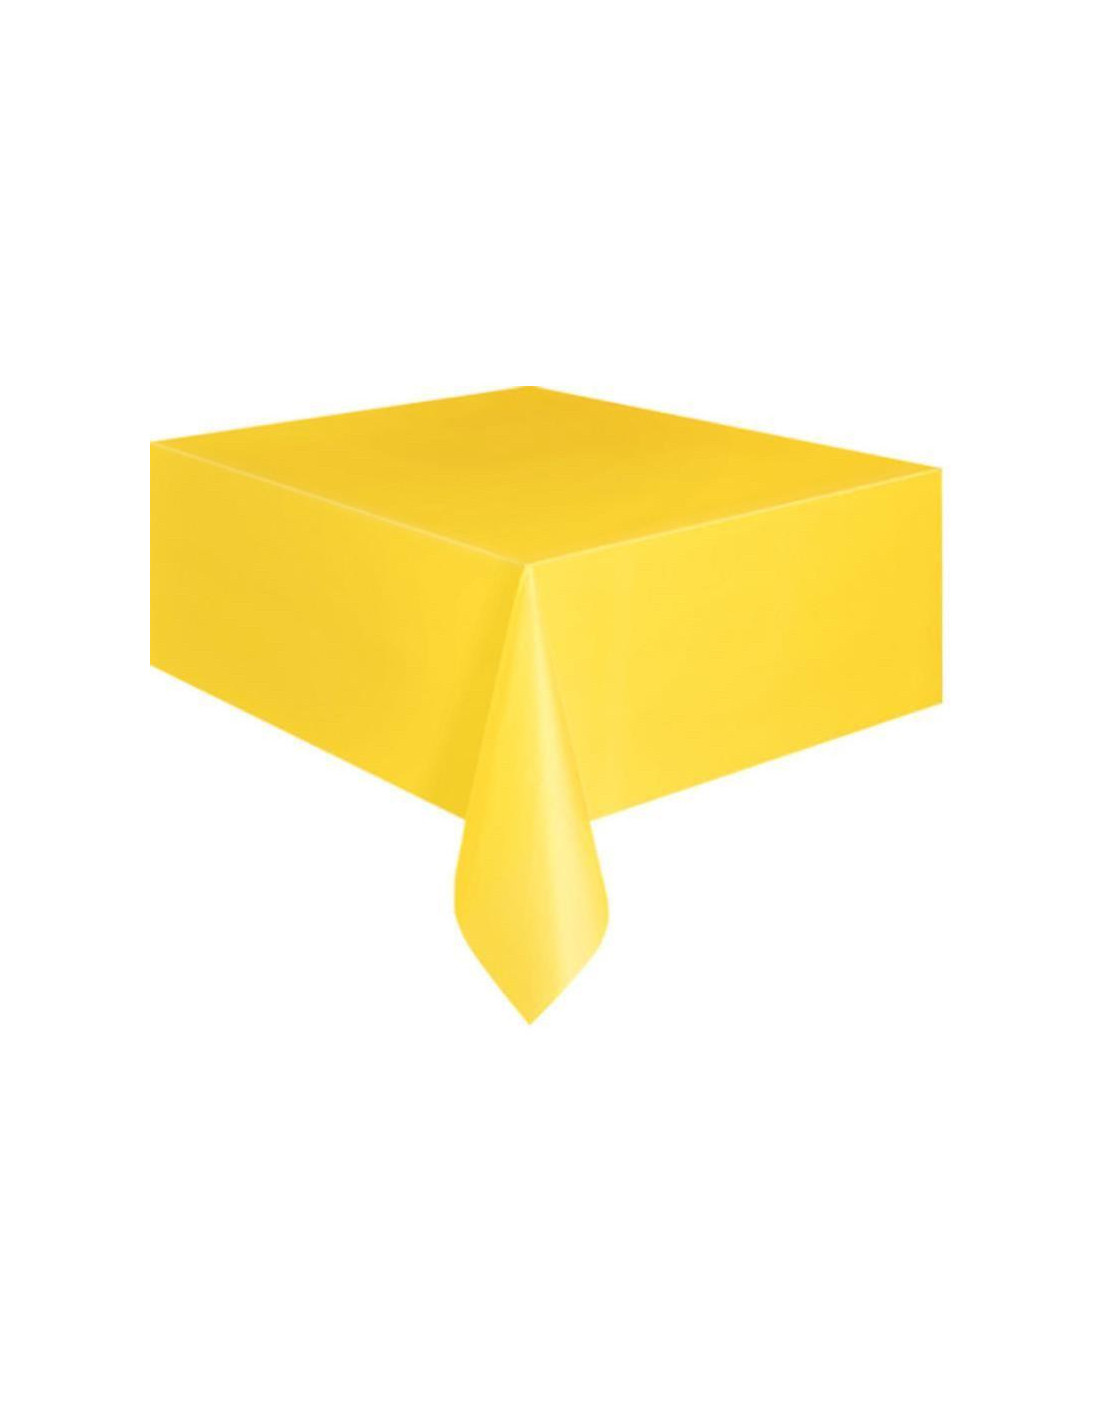 https://espace-evenement.fr/1100-thickbox_default/nappe-jetable-jaune-rectangulaire-en-plastique.jpg